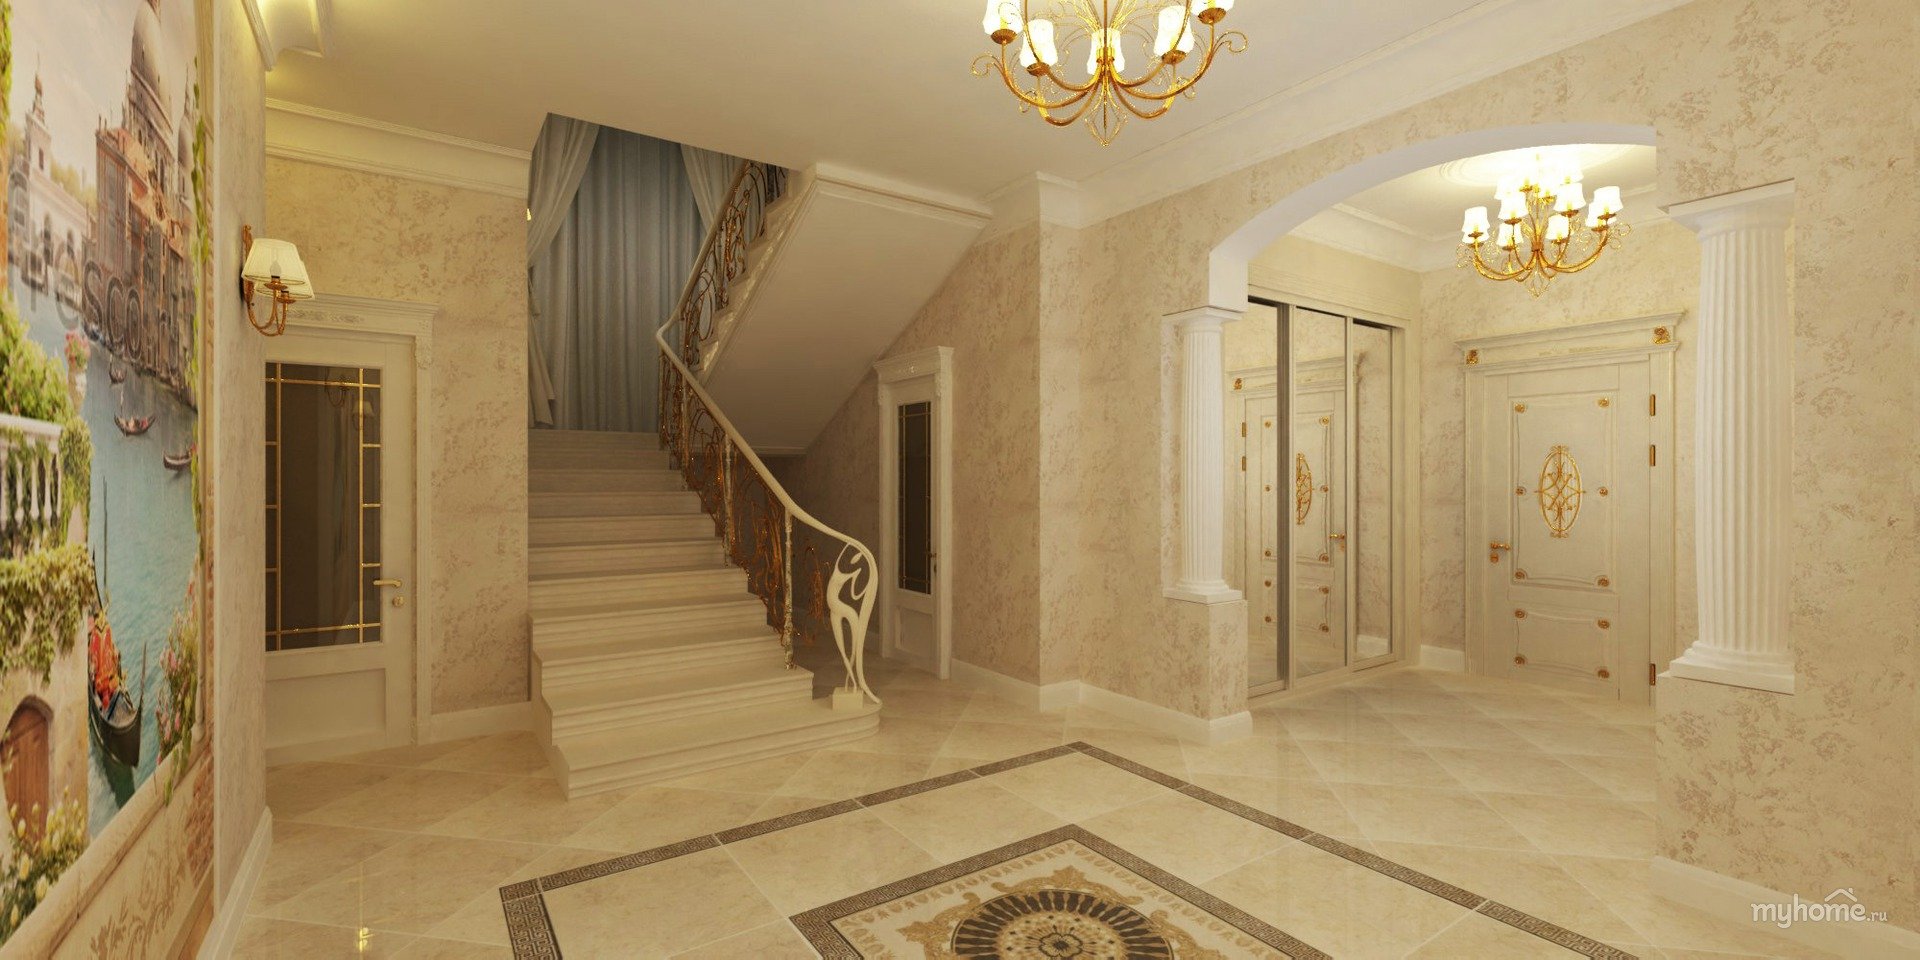 Гостиная с лестницей дизайн: идеи дизайна интерьера гостиной с лестницей на второй этаж, выбор стиля, материала и креплениядекор и дизайн интерьера